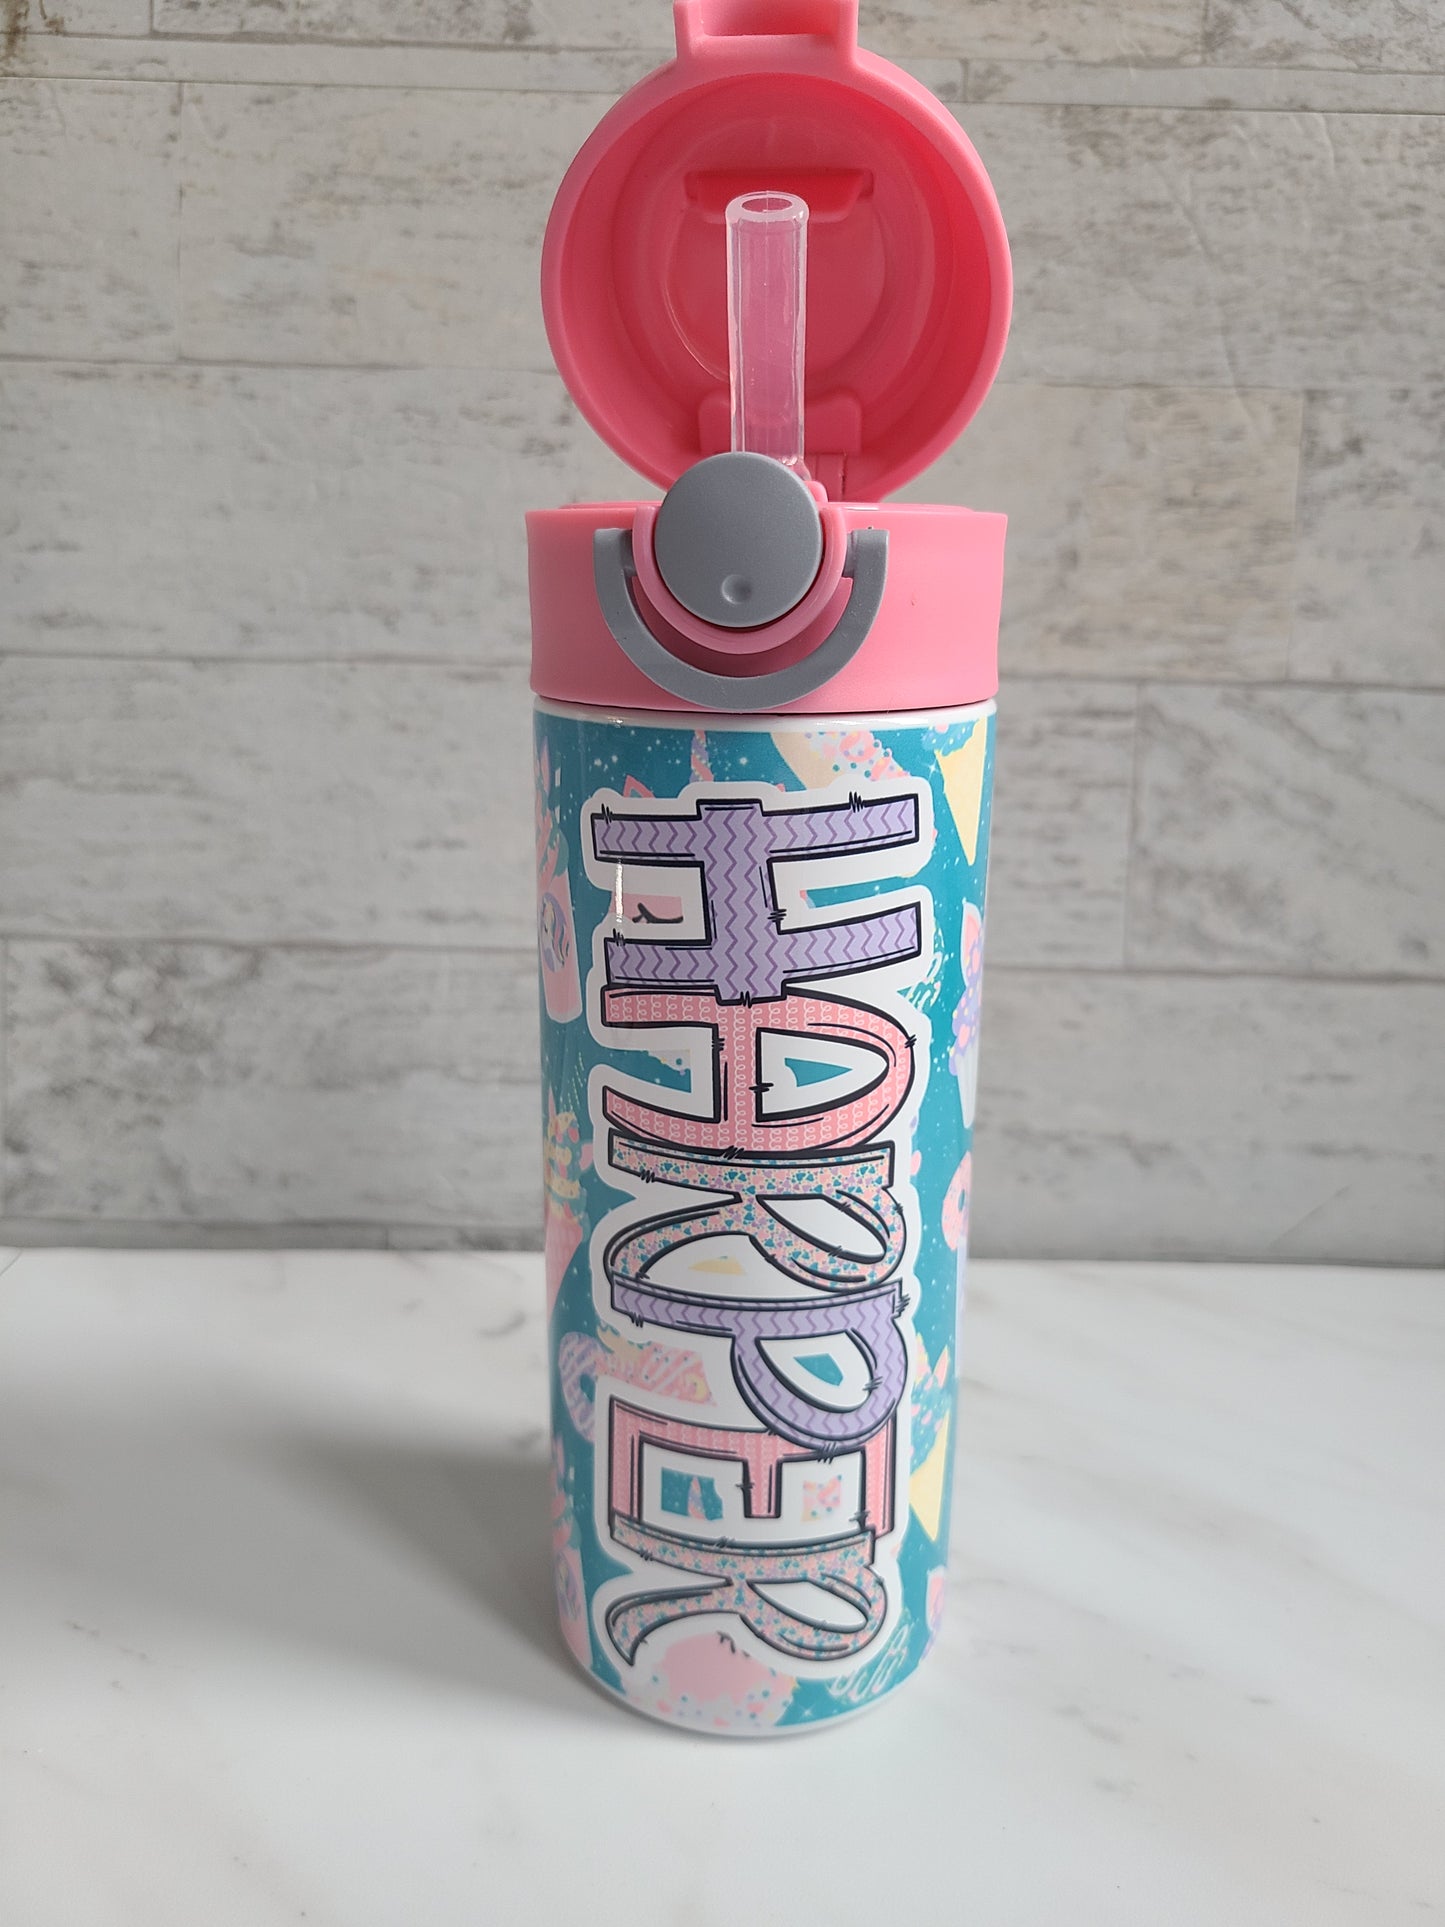 Personalized Unicorn Treats Water Bottle - 12 oz Flip Top Water Bottle with Straw